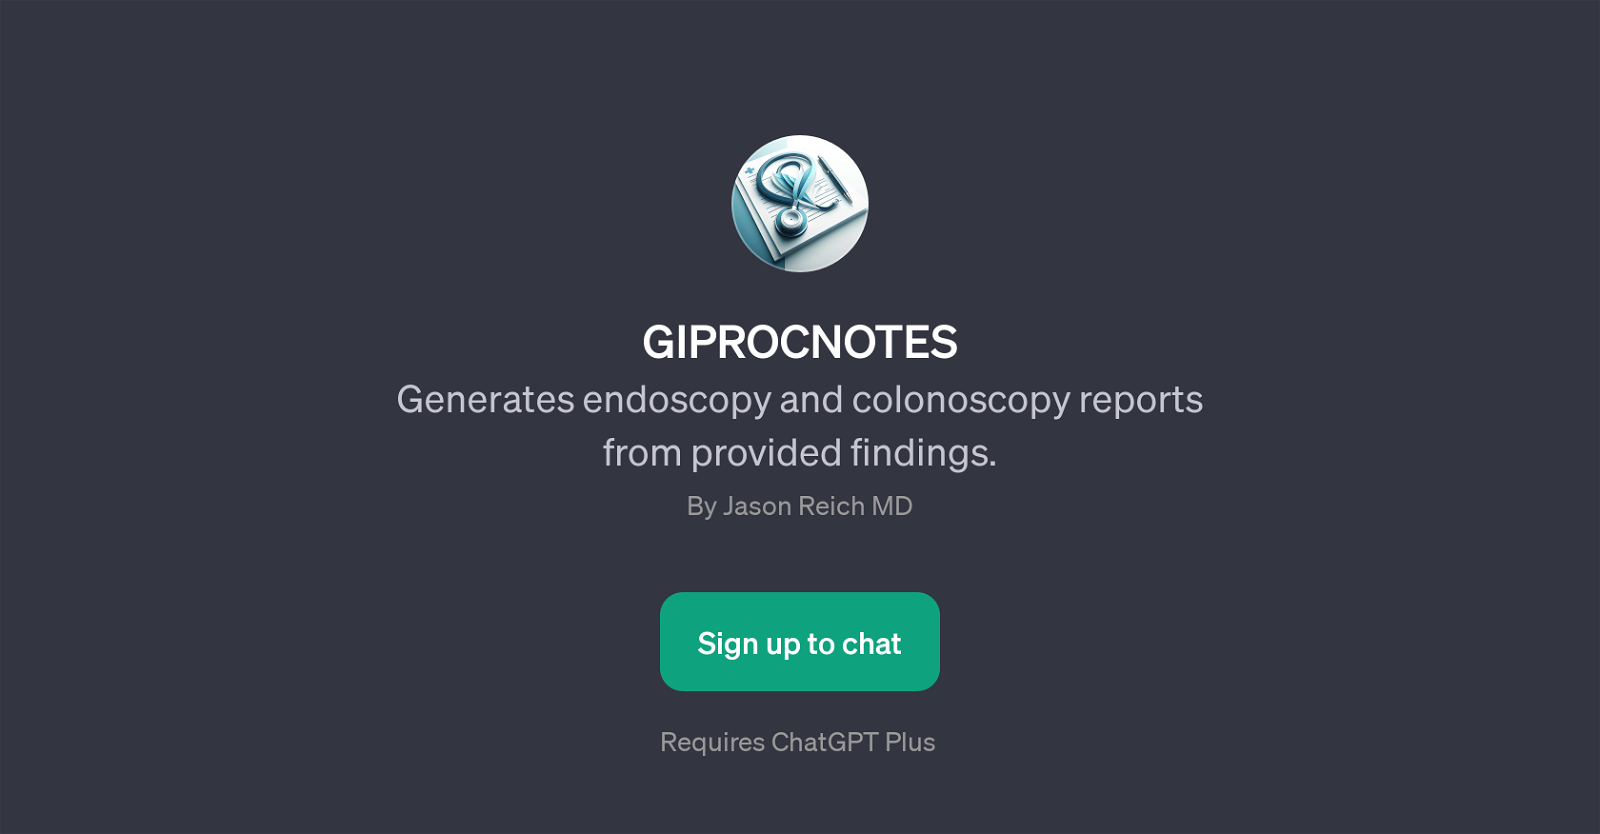 GIPROCNOTES website